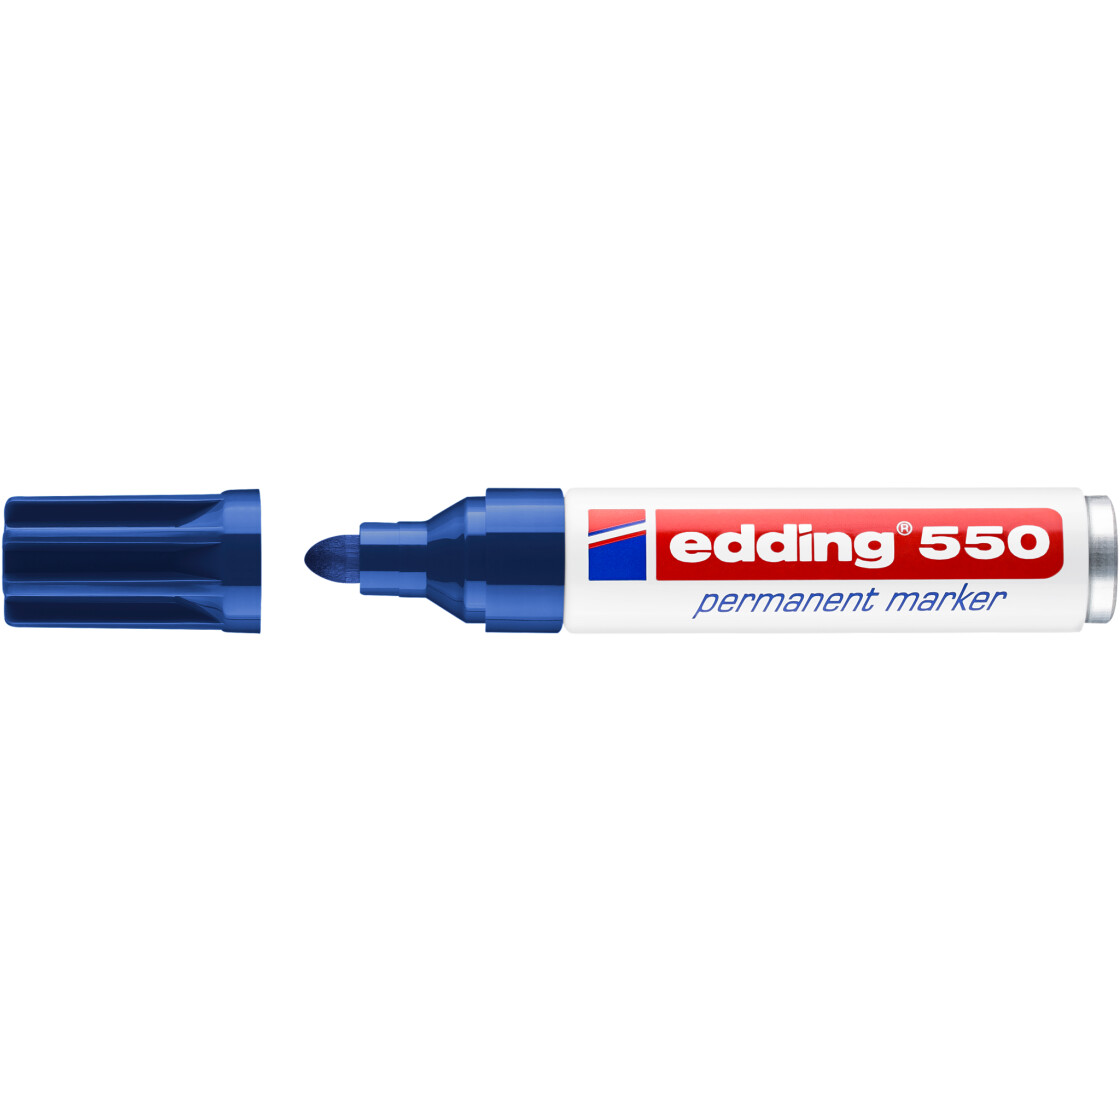 Edding 550-003 blau Permanentmarker mit Rundspitze 3-4 mm 